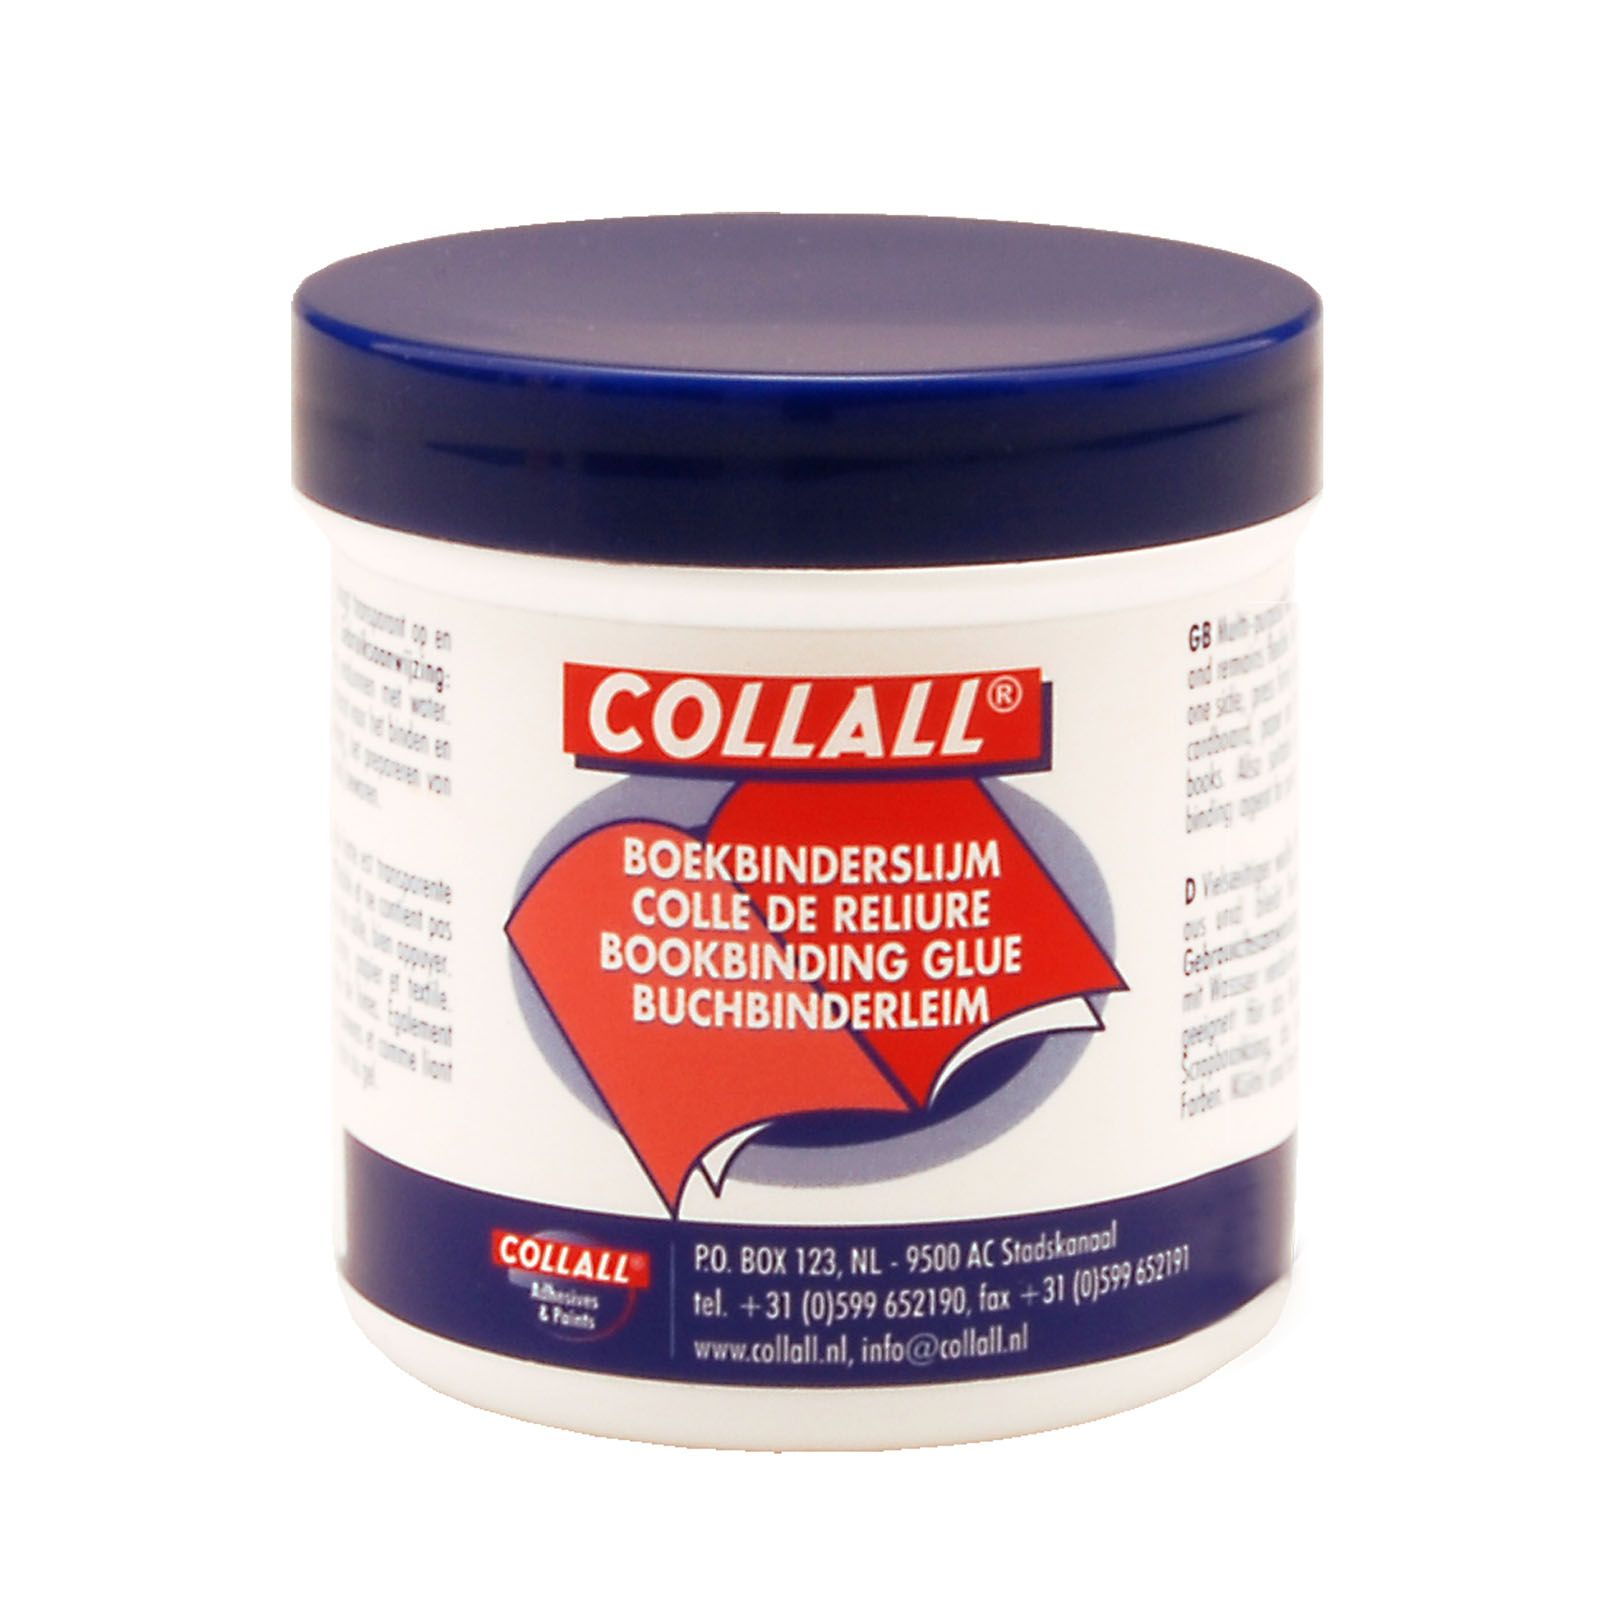 Collall • Bookbinding glue 100 gram